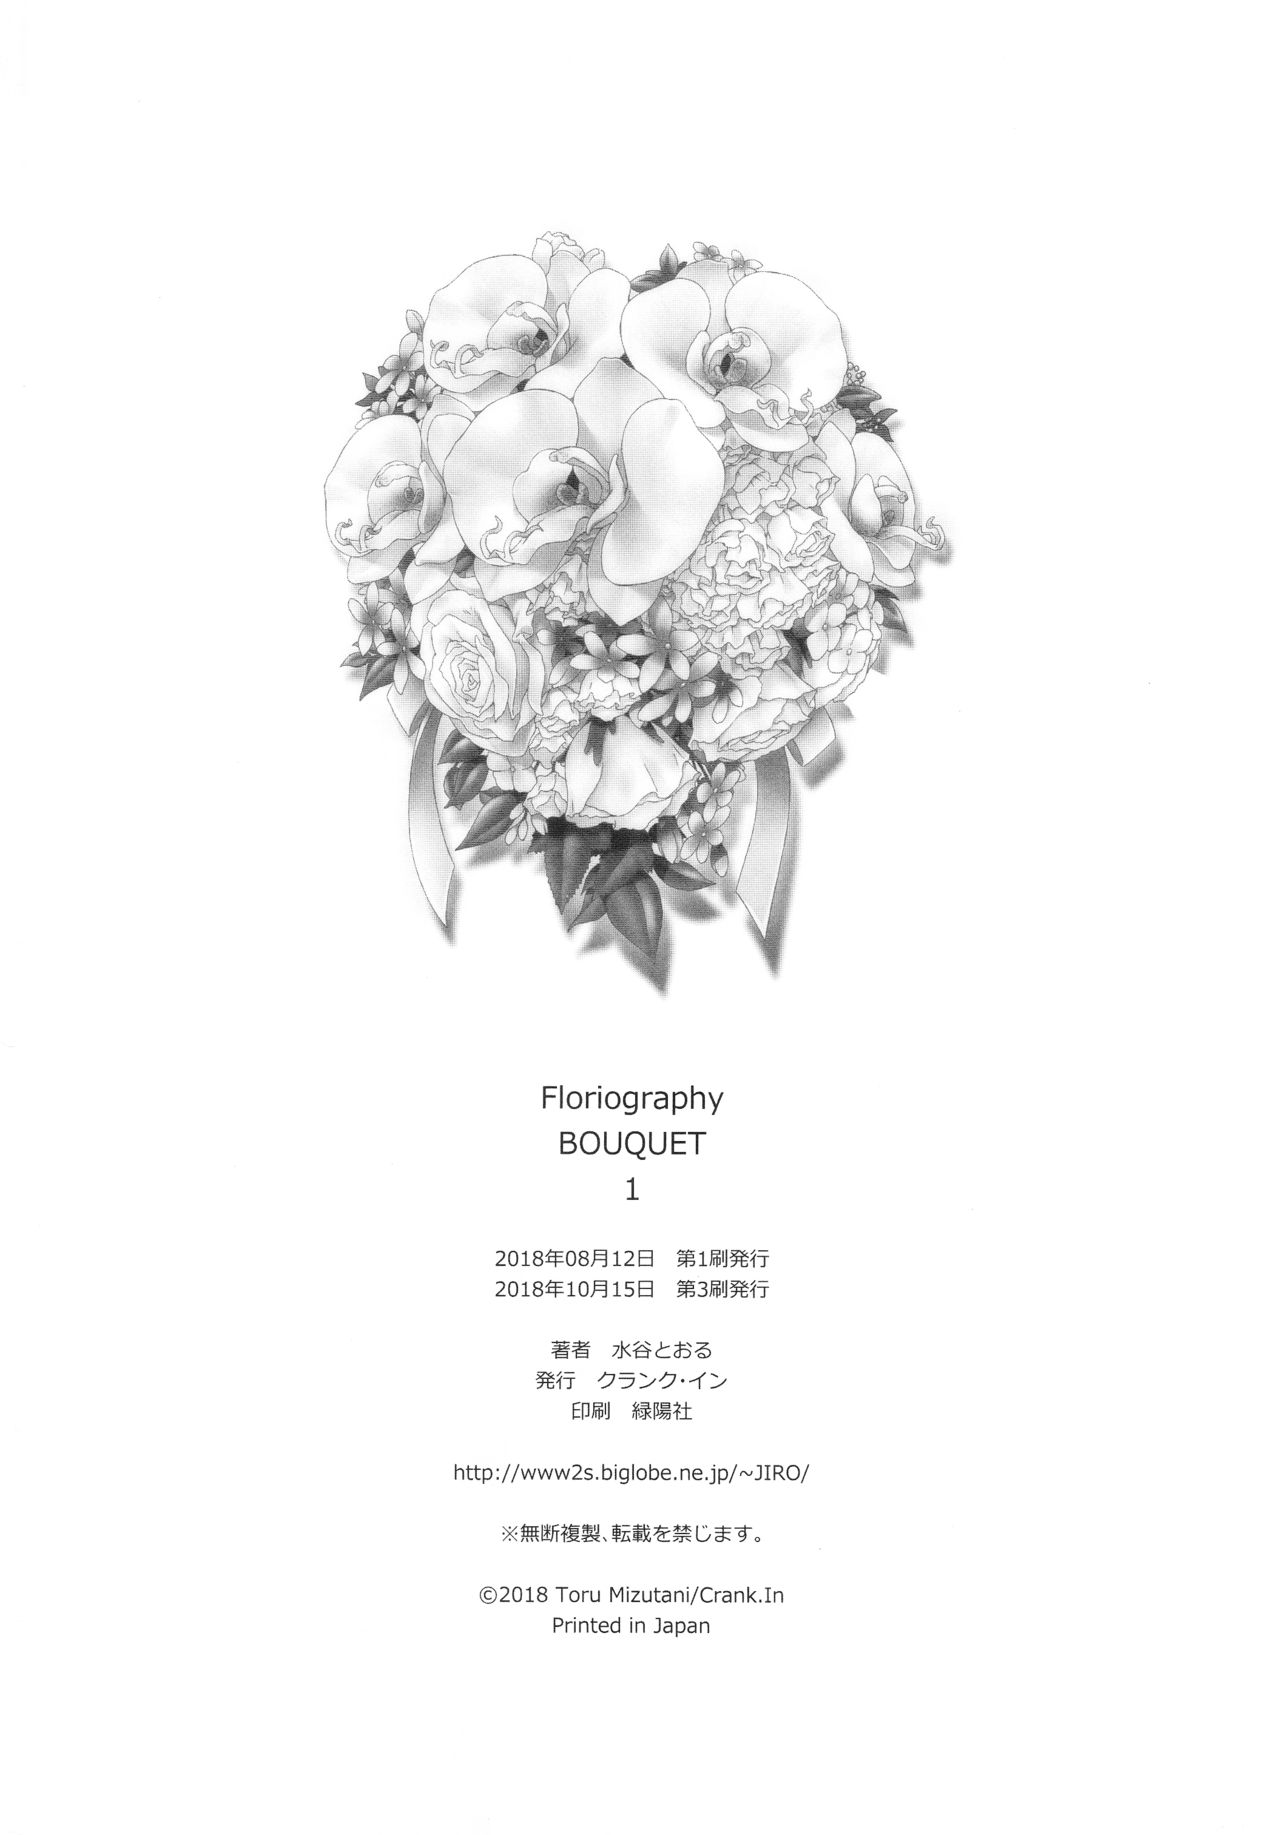 [クランク・イン (水谷とおる)] Floriography BOUQUET 1 [2018年10月15日]